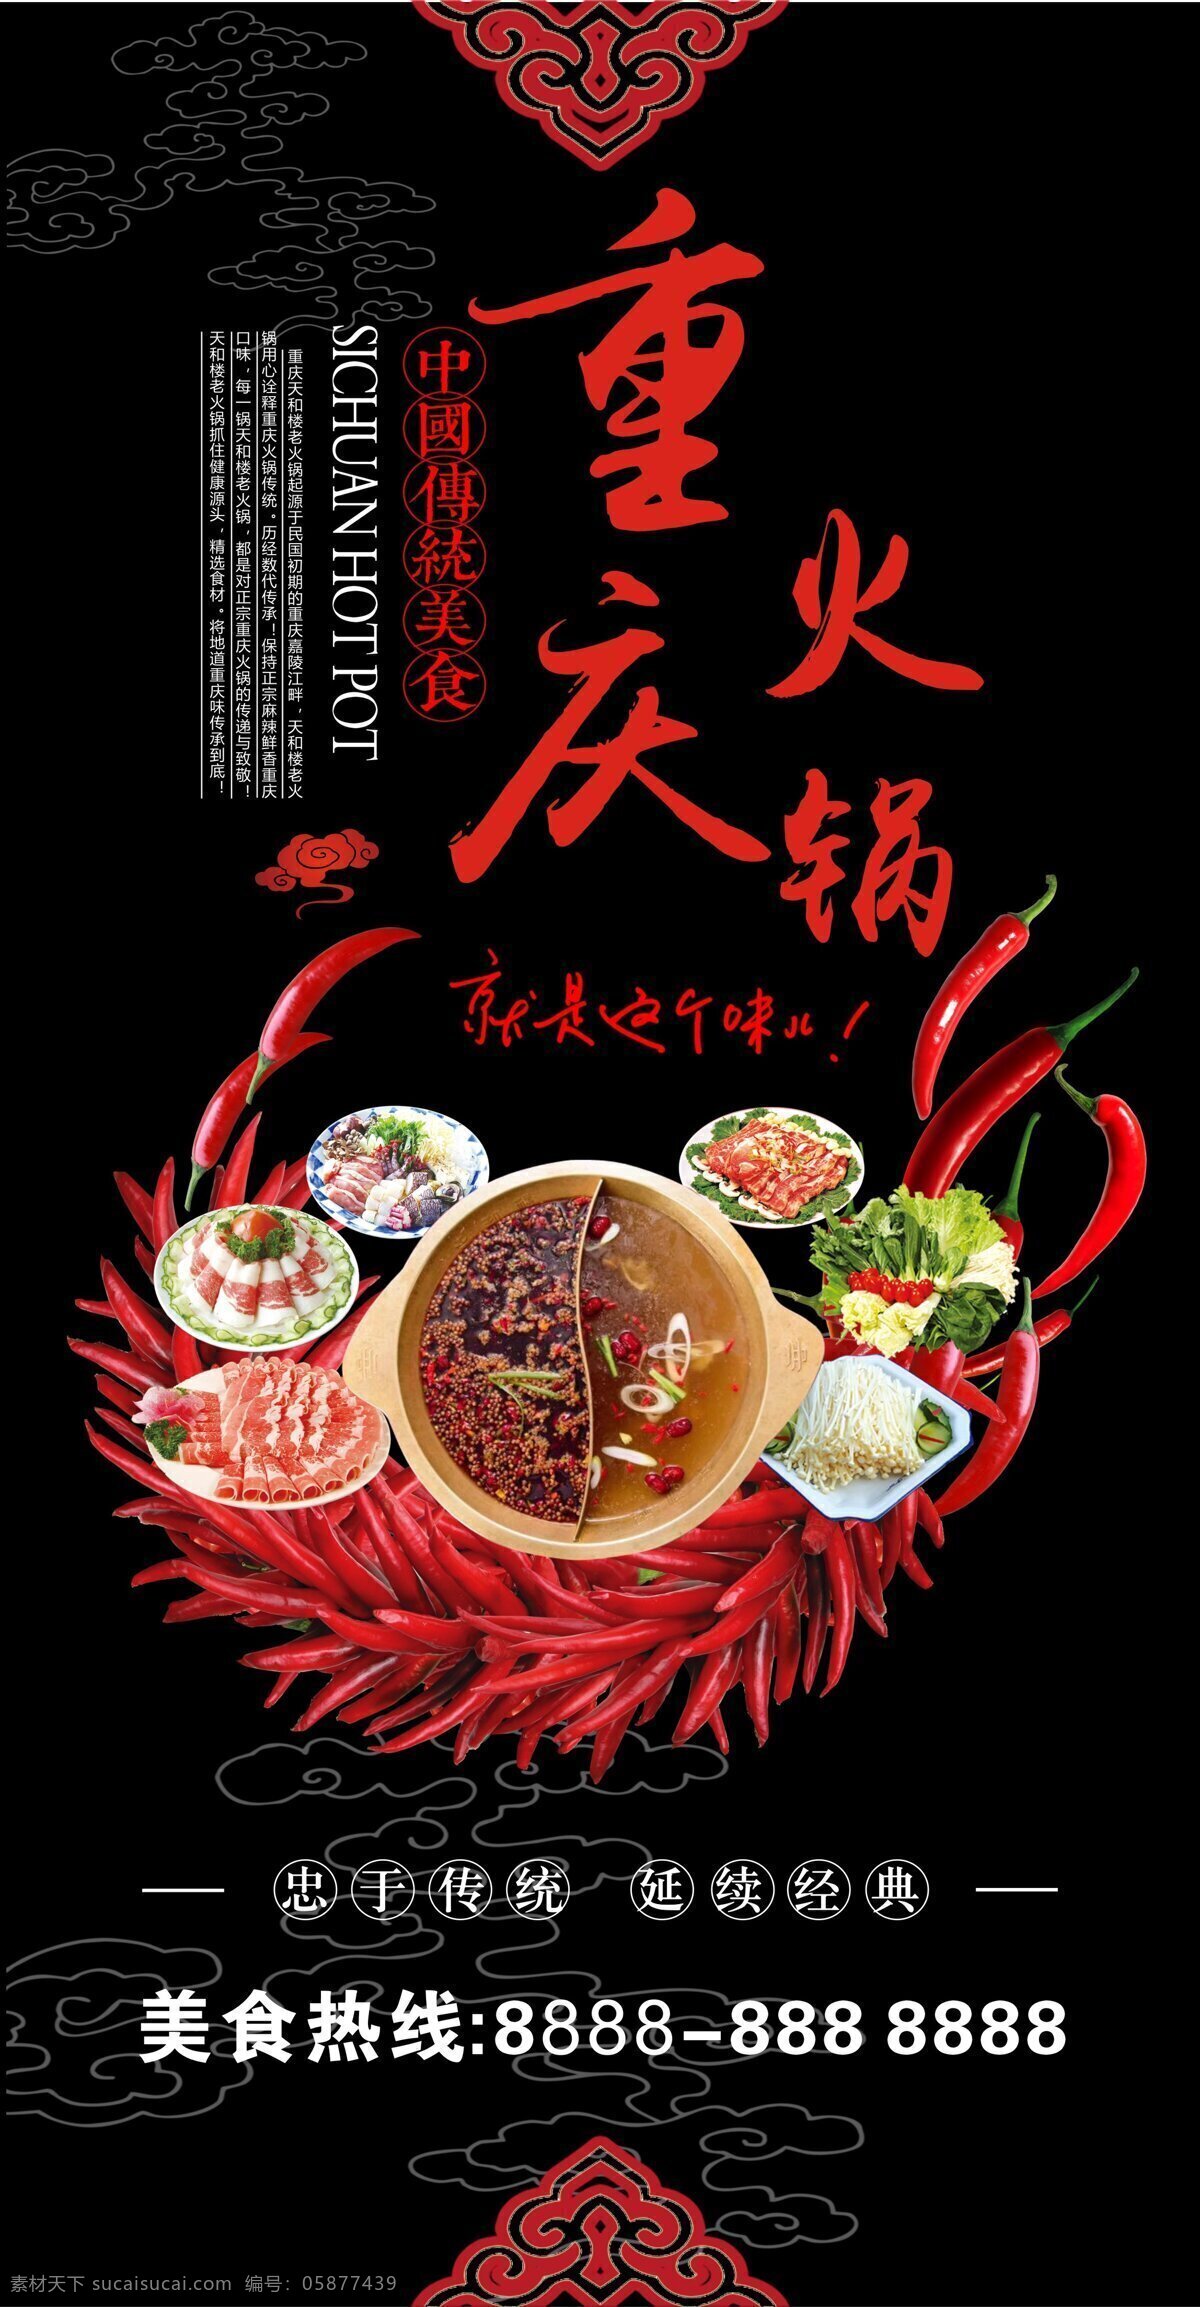 重庆火锅 灯箱 设计素材 重庆 火锅 美食 传统 辣椒 鸳鸯 配菜